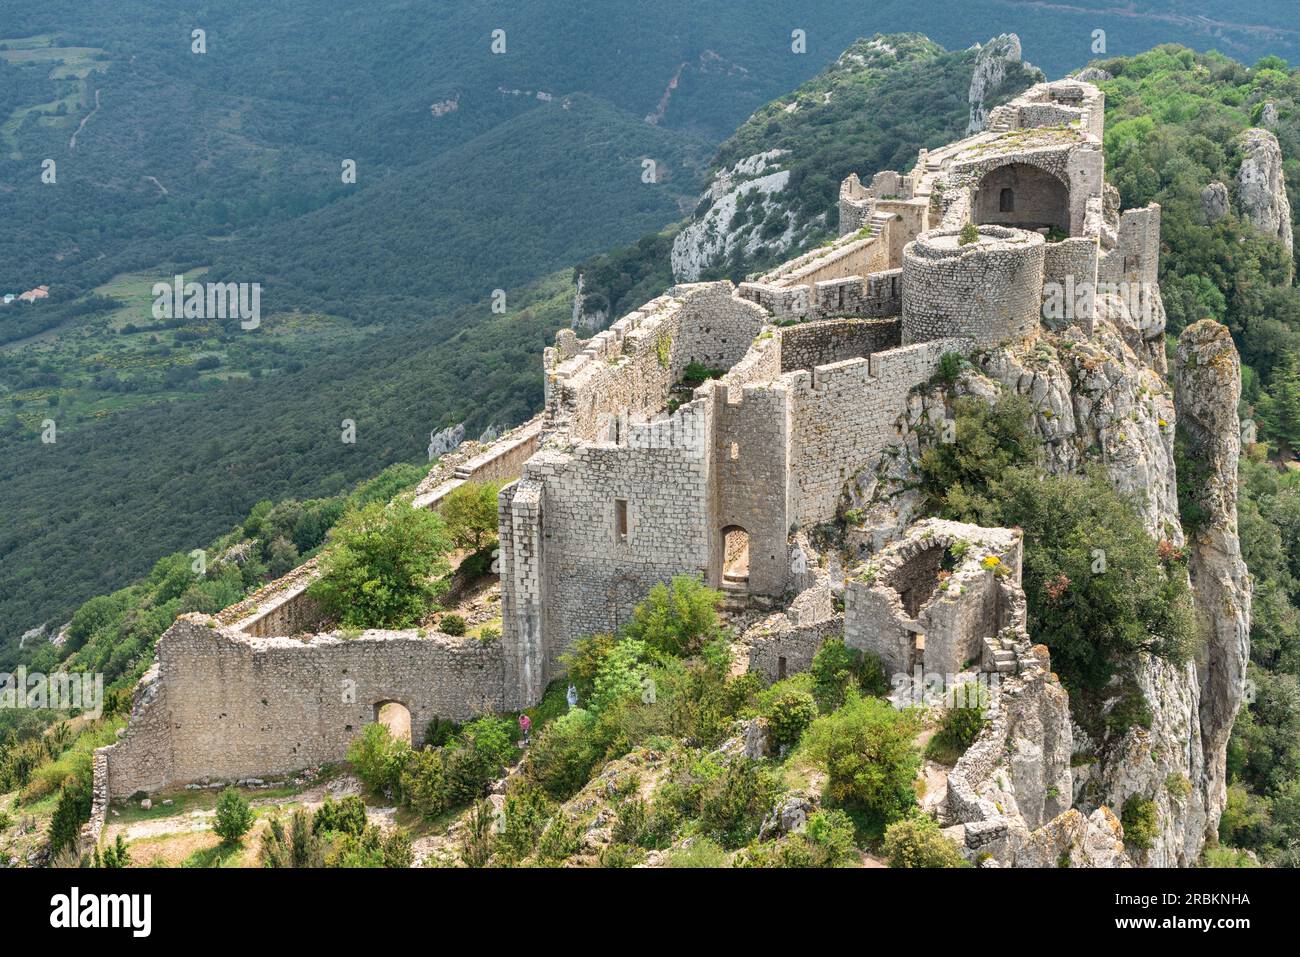 Peyrepertuse (Languedocien : Castèl de Pèirapertusa) est une forteresse en ruines et l'un des châteaux cathares situés dans les Pyrénées françaises. Banque D'Images